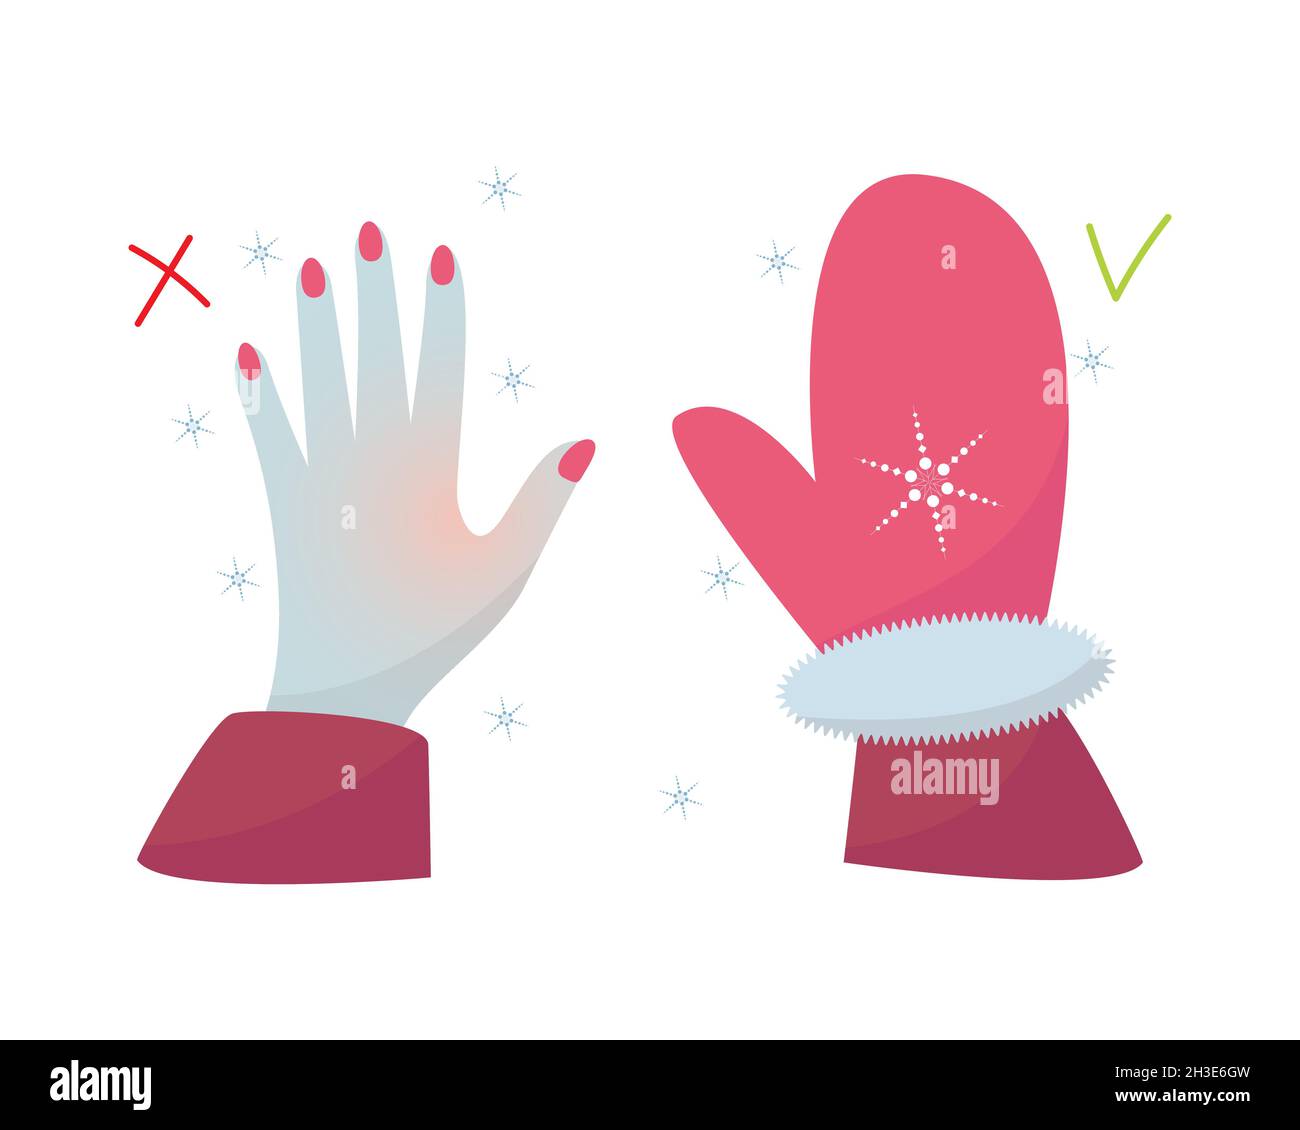 Congelare la mano dalla mano fredda e calda in una muffa, guanto, pericolo, bassa temperatura, gelo, Fiocco di neve. Isolato, sfondo bianco. Illustrazione vettoriale Illustrazione Vettoriale